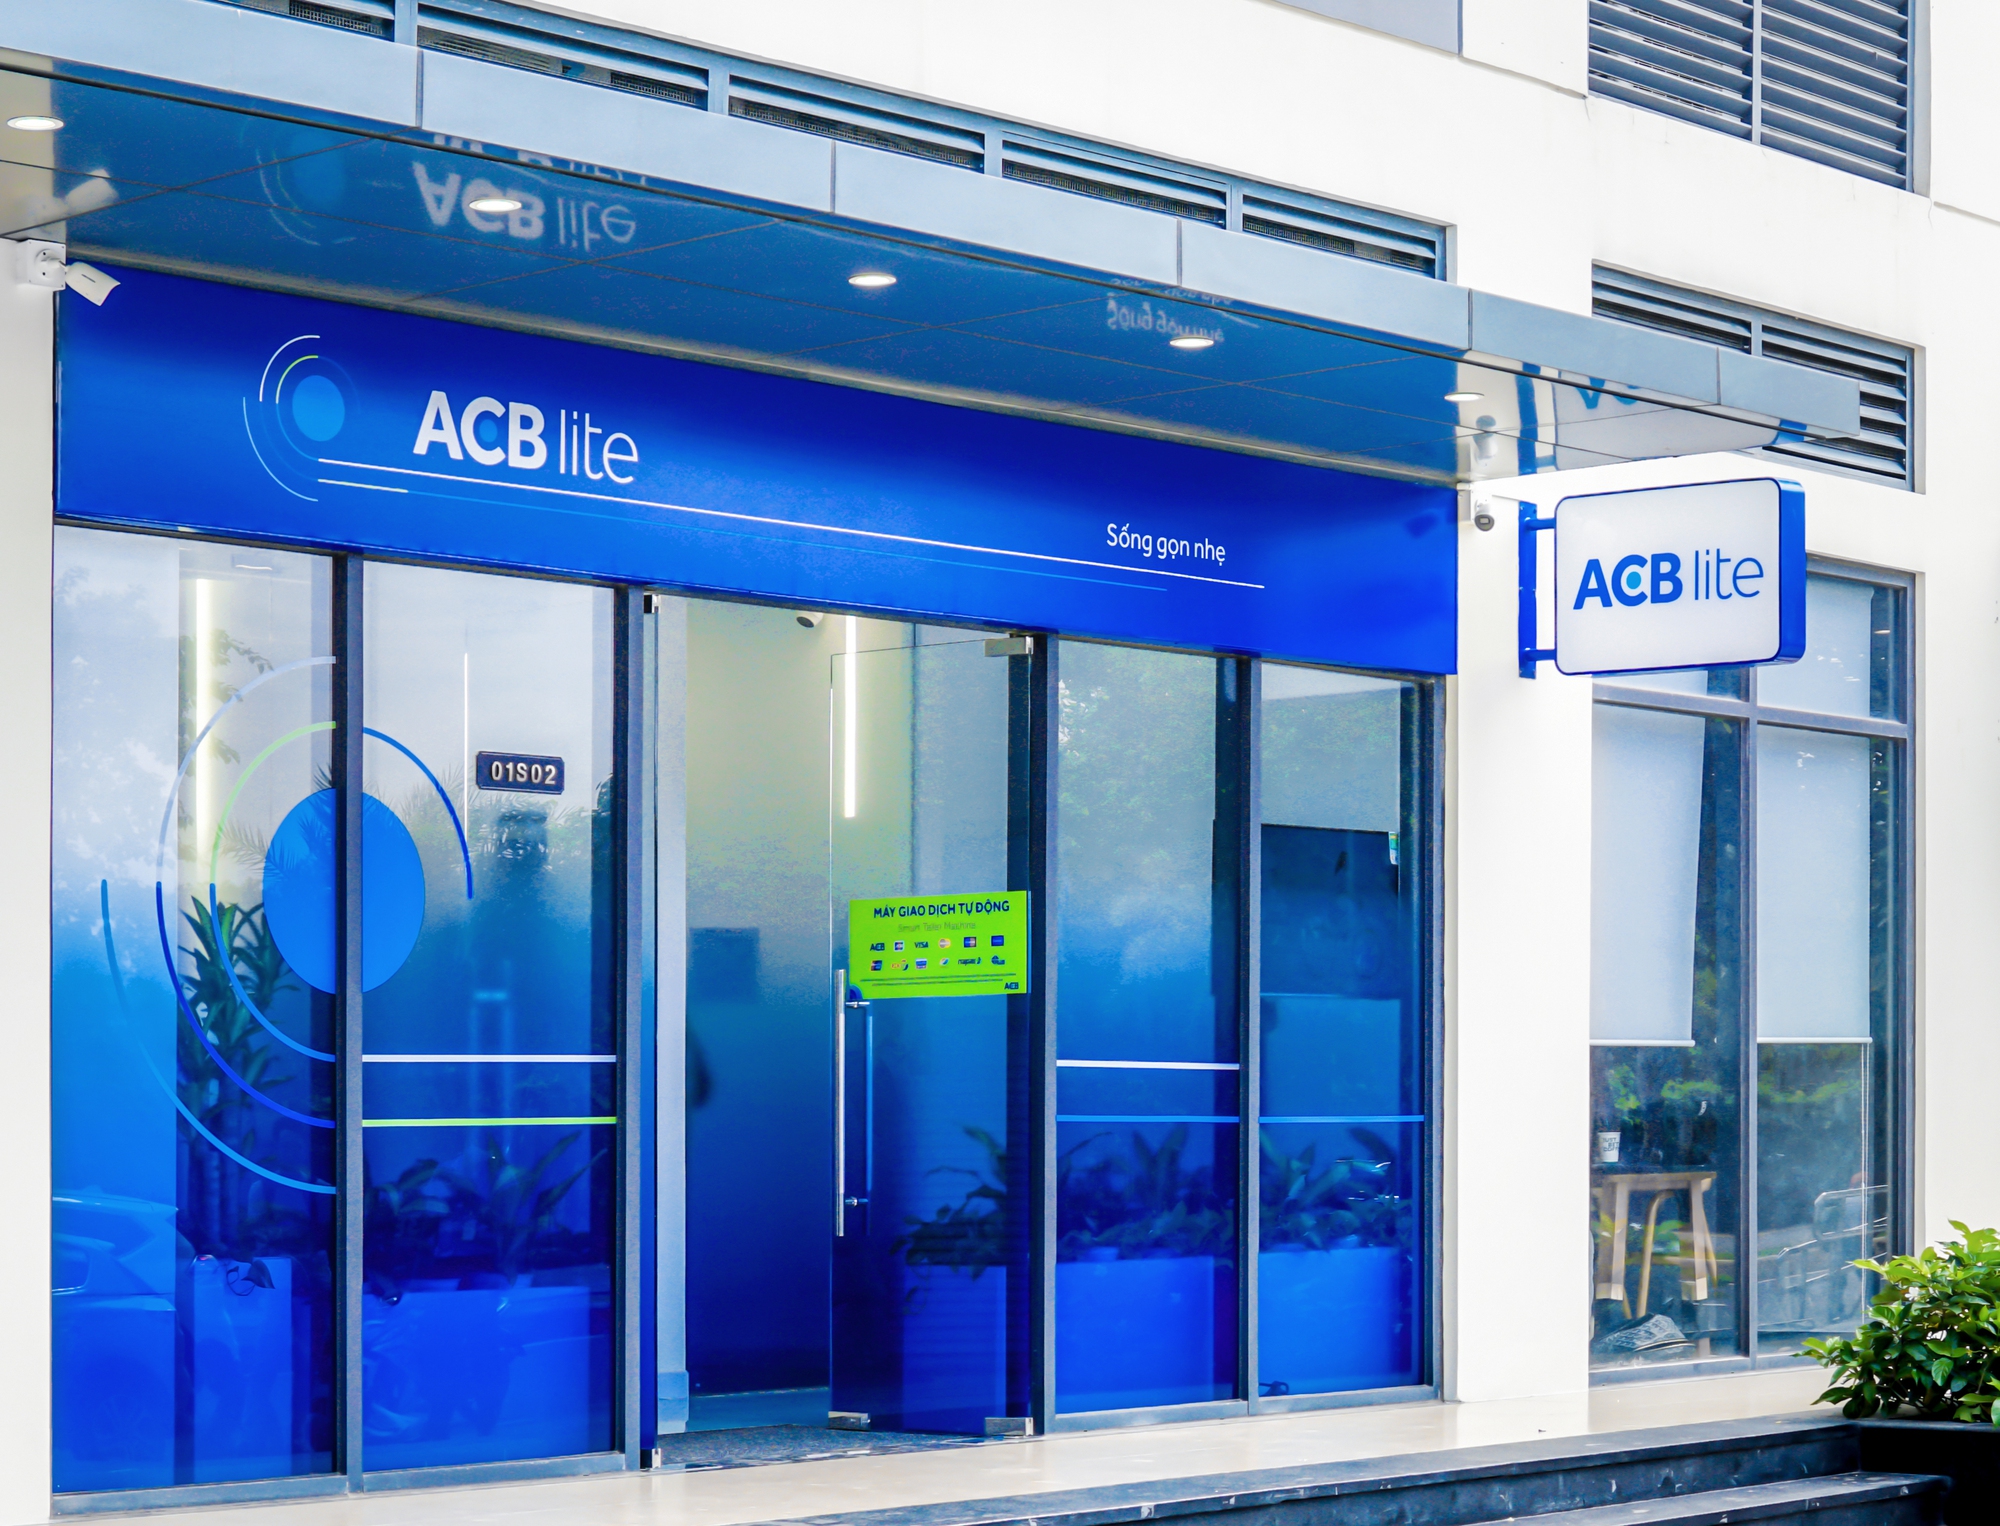 ACB hoàn thành 50% kế hoạch năm, đẩy mạnh cho vay ưu đãi - Ảnh 1.